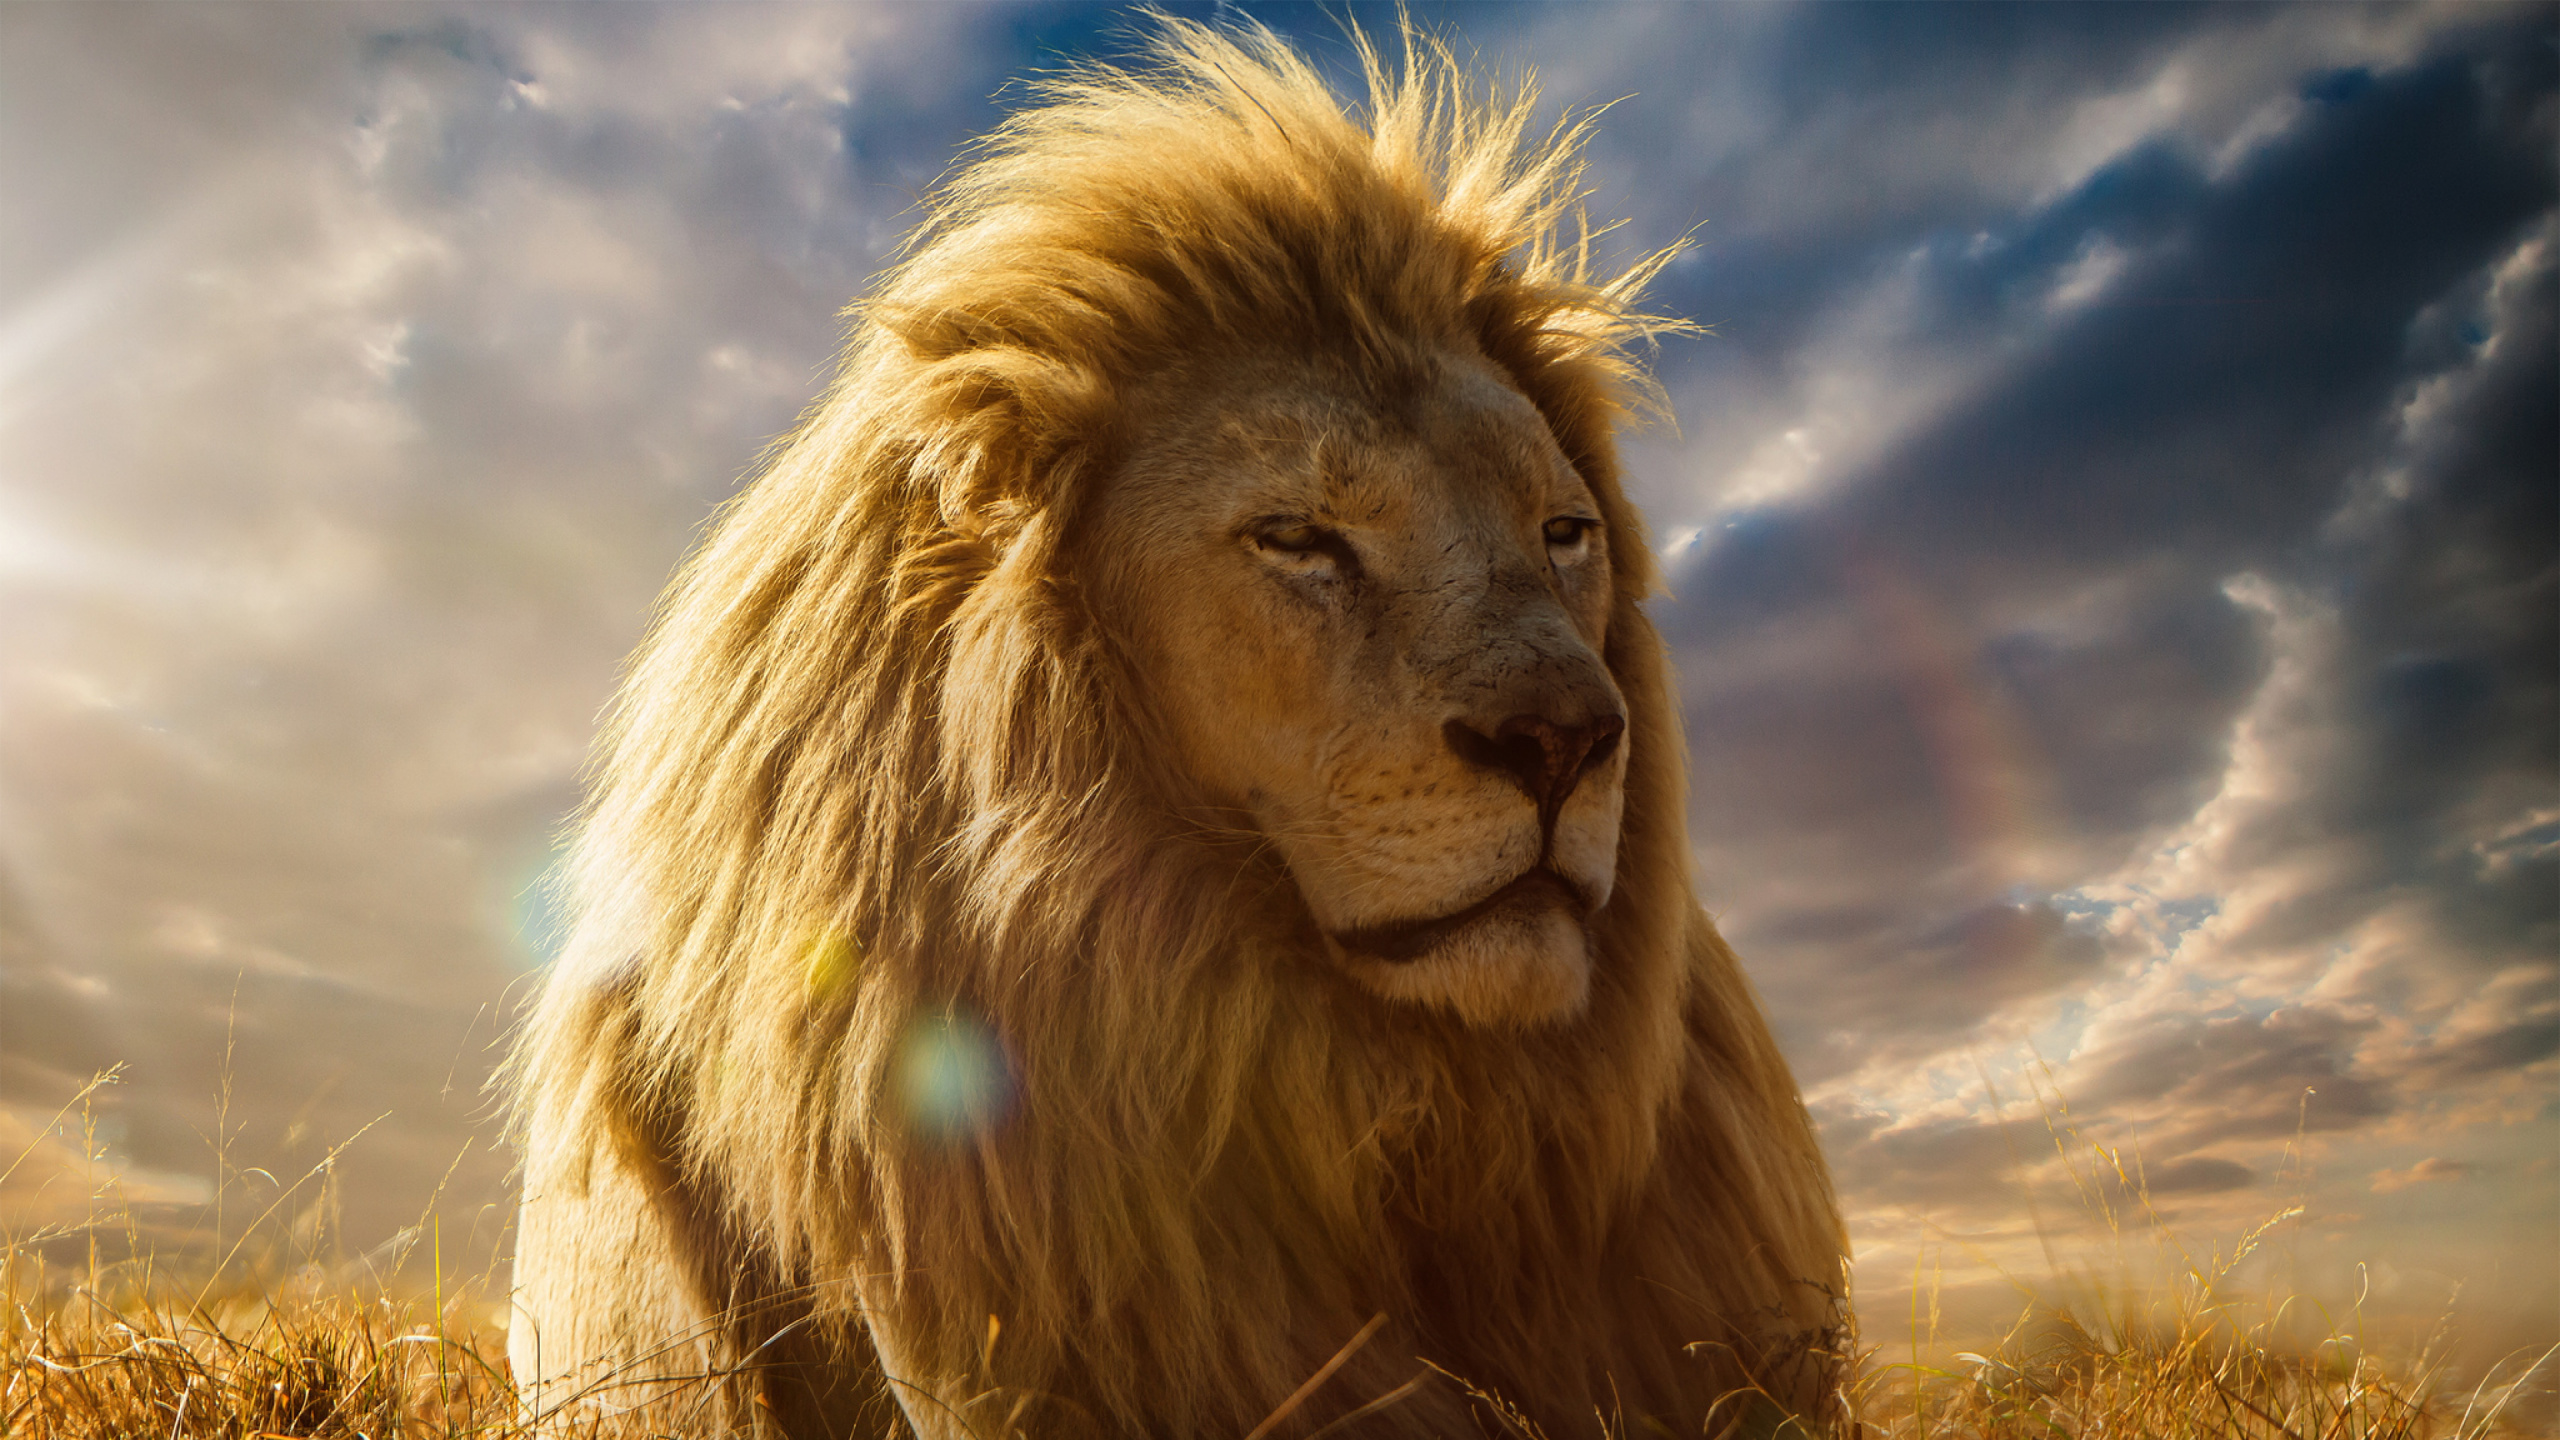 狮子, 头发, 马赛马的狮子, 野生动物, 猫科 壁纸 2560x1440 允许